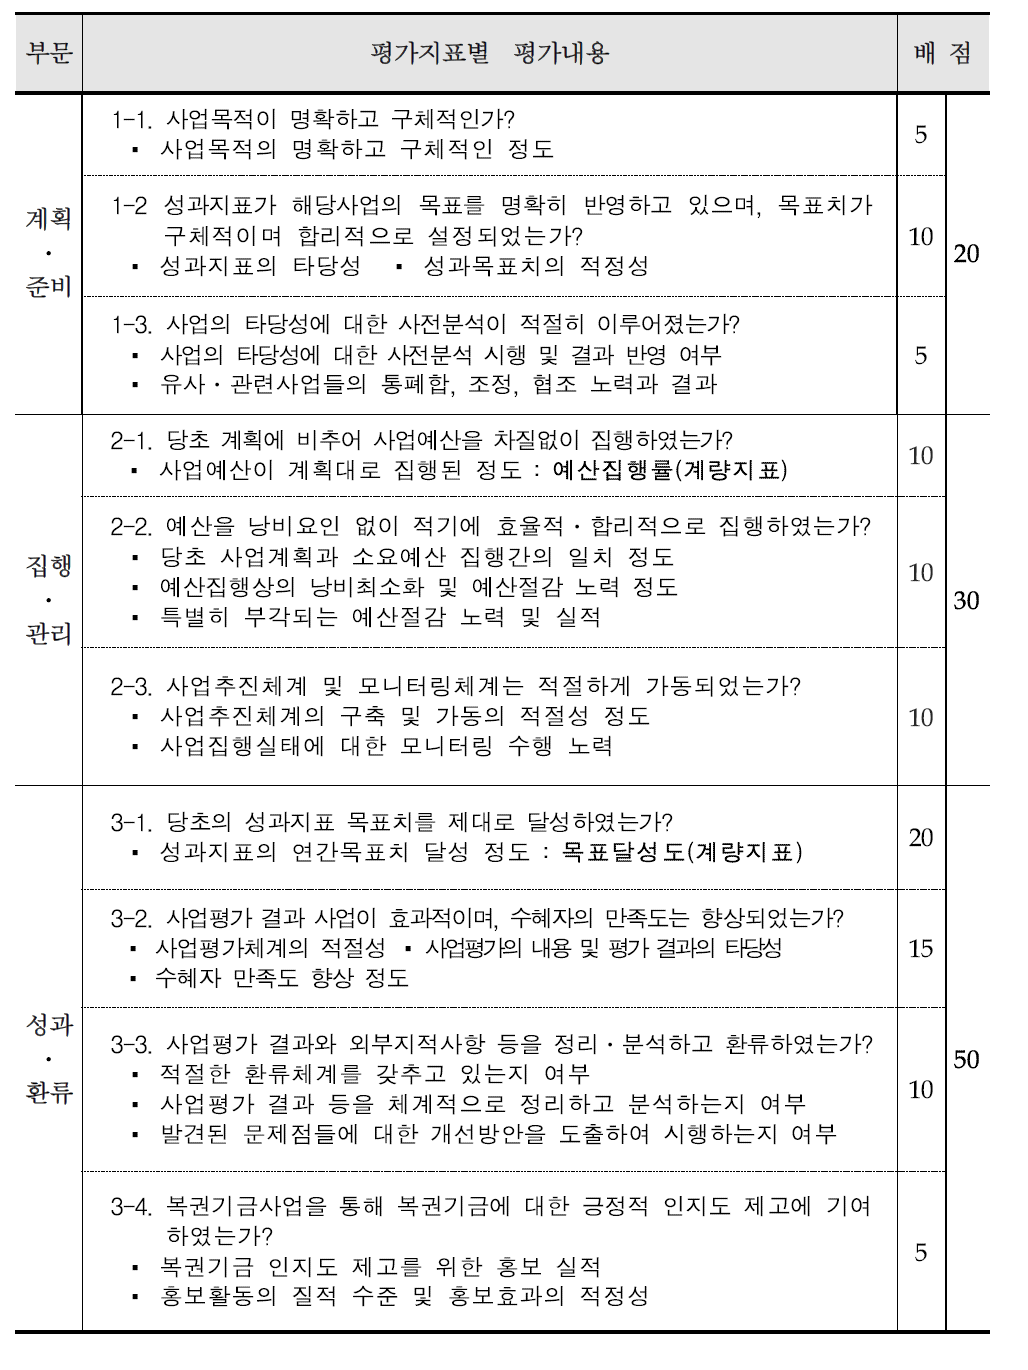 2012년 복권기금 성과평가지표